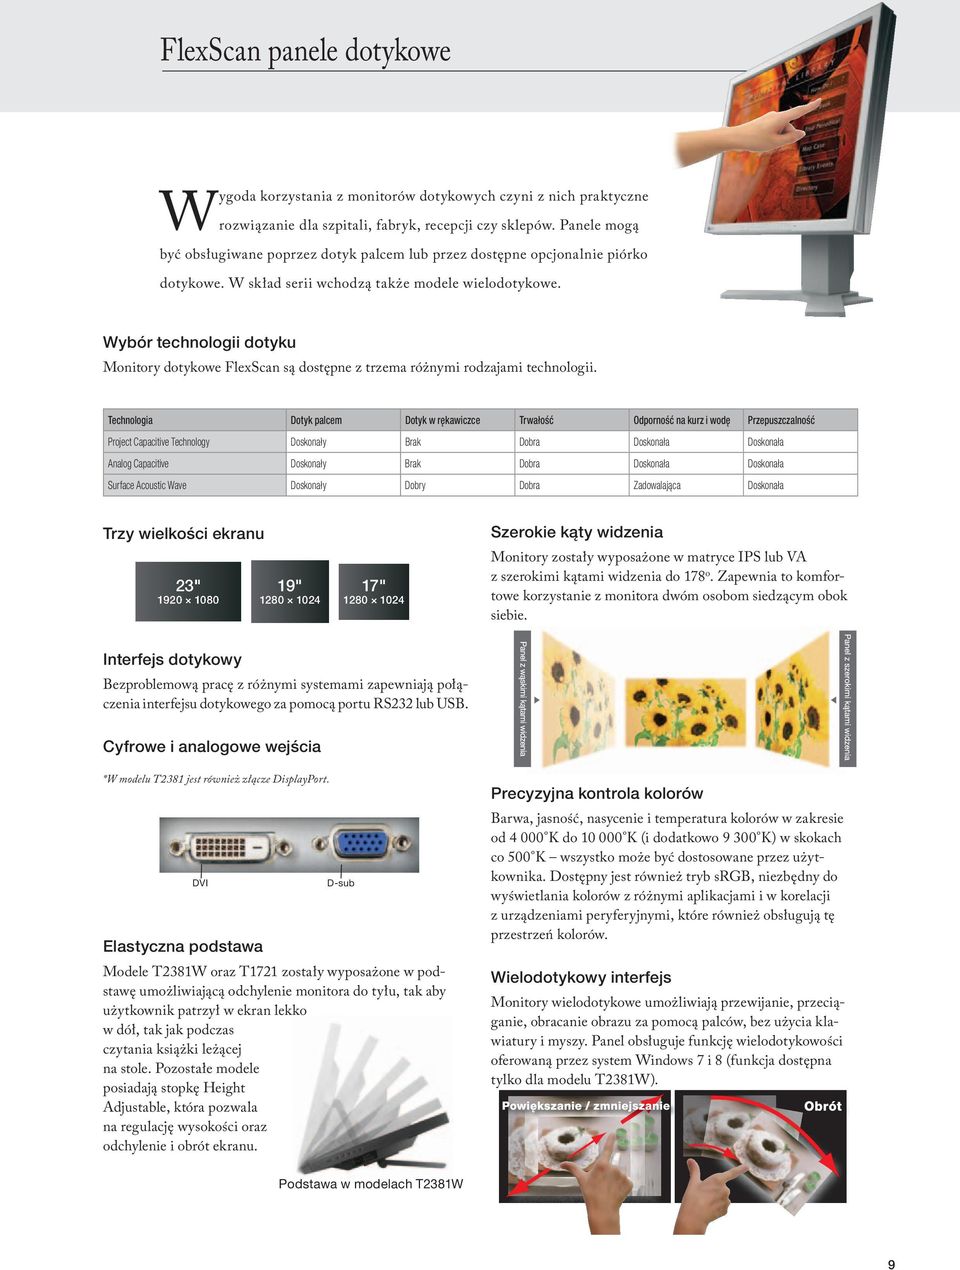 Wybór technologii dotyku Monitory dotykowe FlexScan są dostępne z trzema różnymi rodzajami technologii.